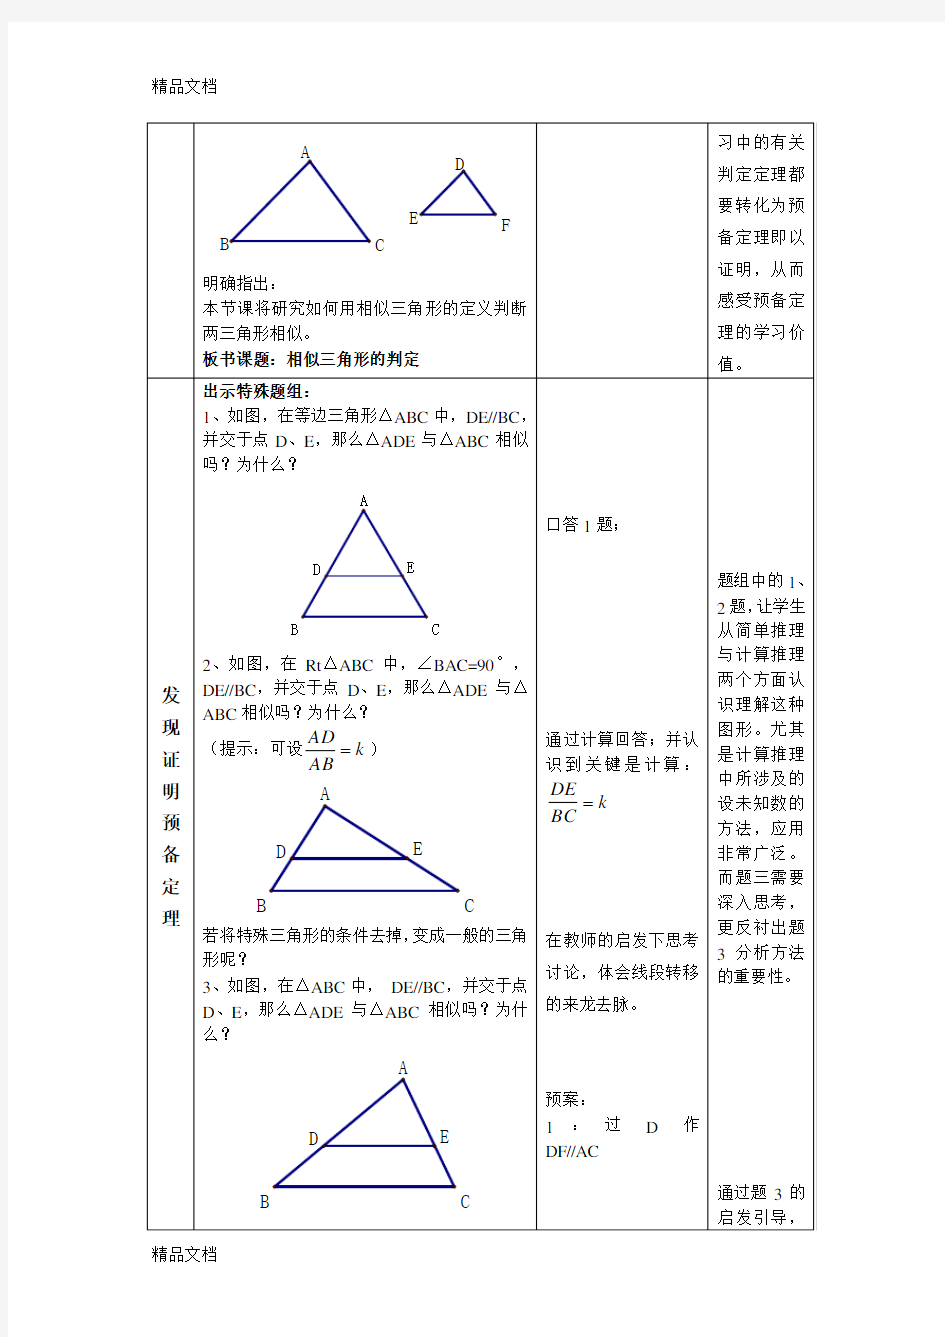 相似三角形预备定理证明学习资料